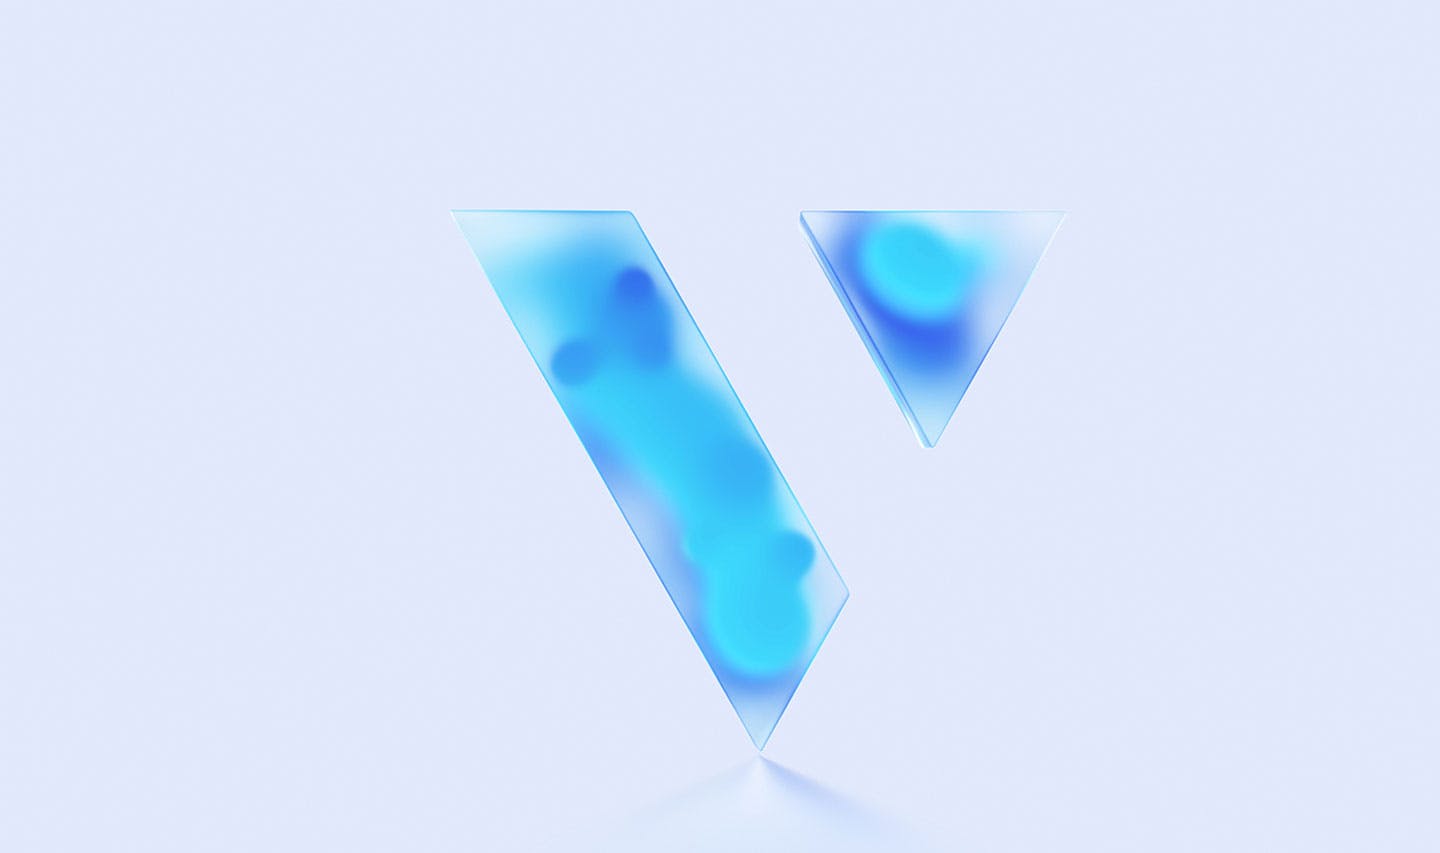 The Veritas V Logo